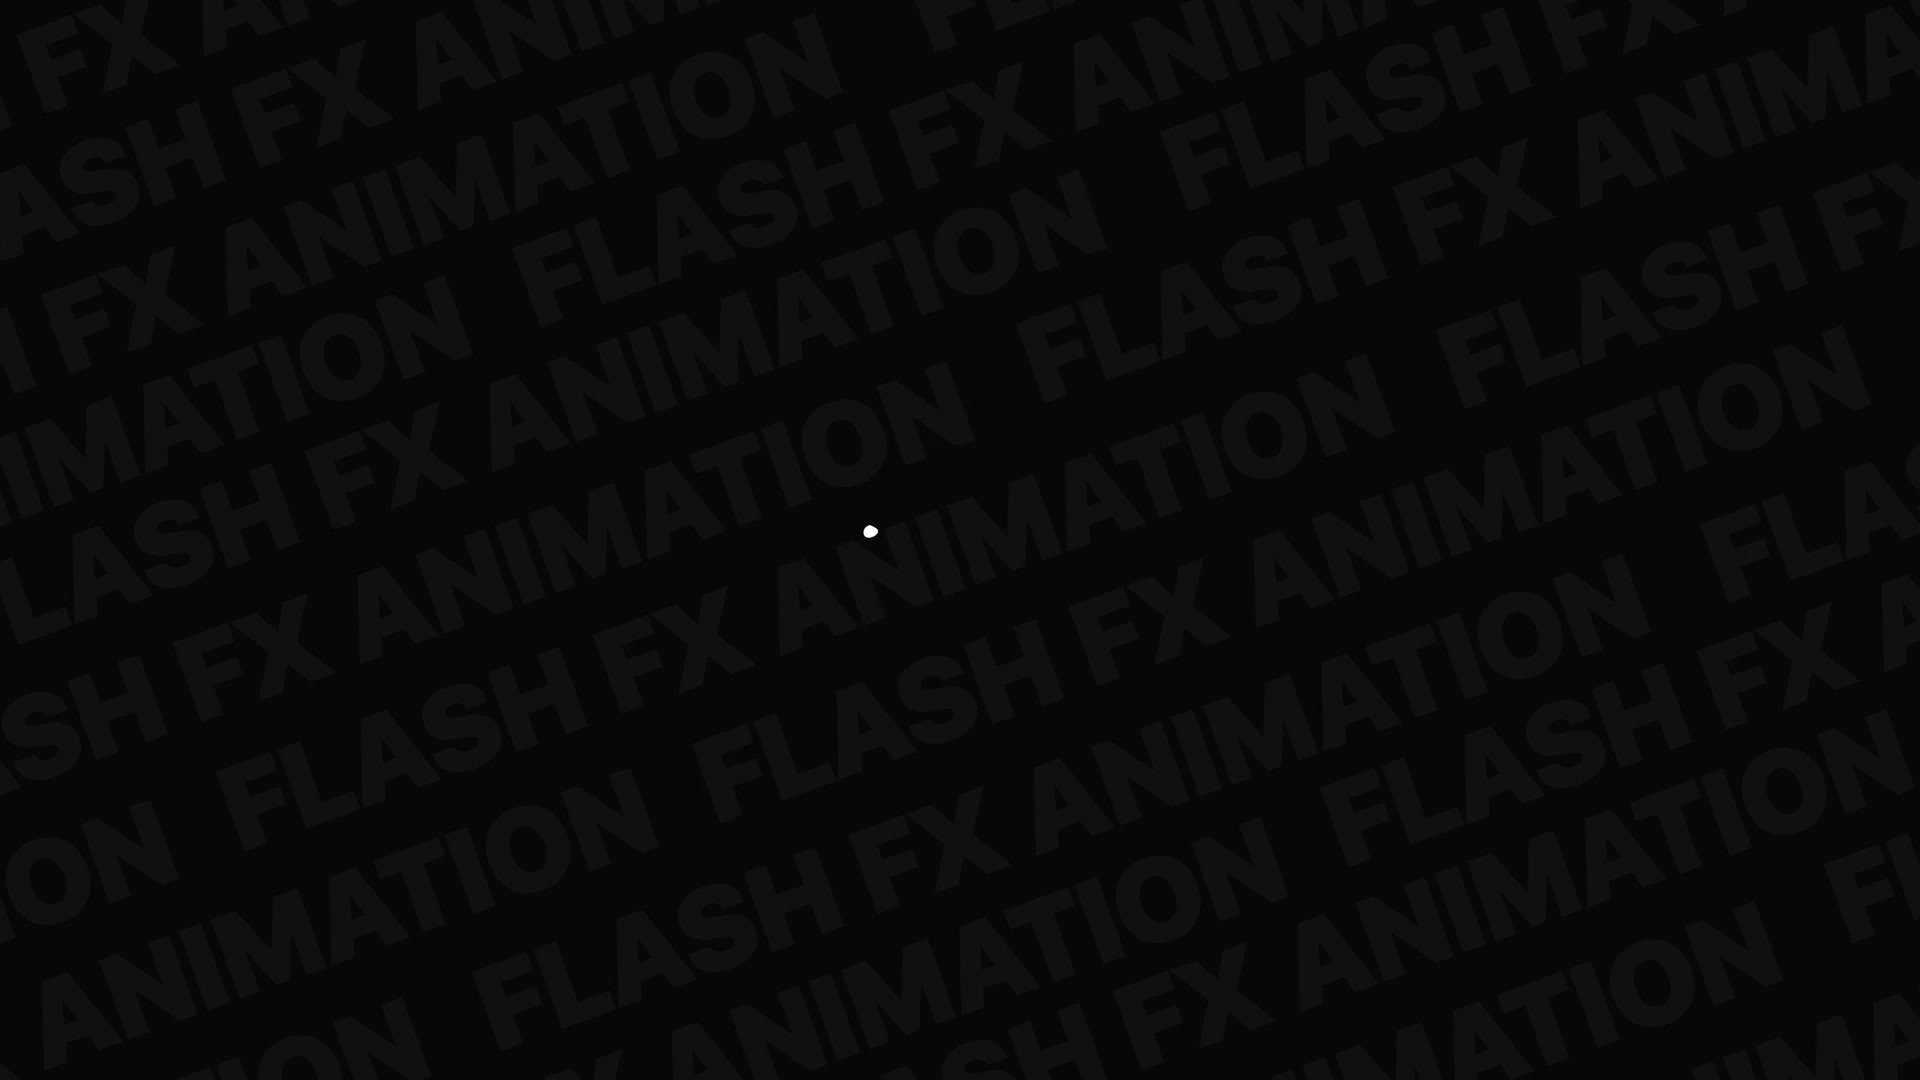 Anime Explosion Elements | Premiere Pro MOGRT Videohive 37630861 Premiere Pro Image 7